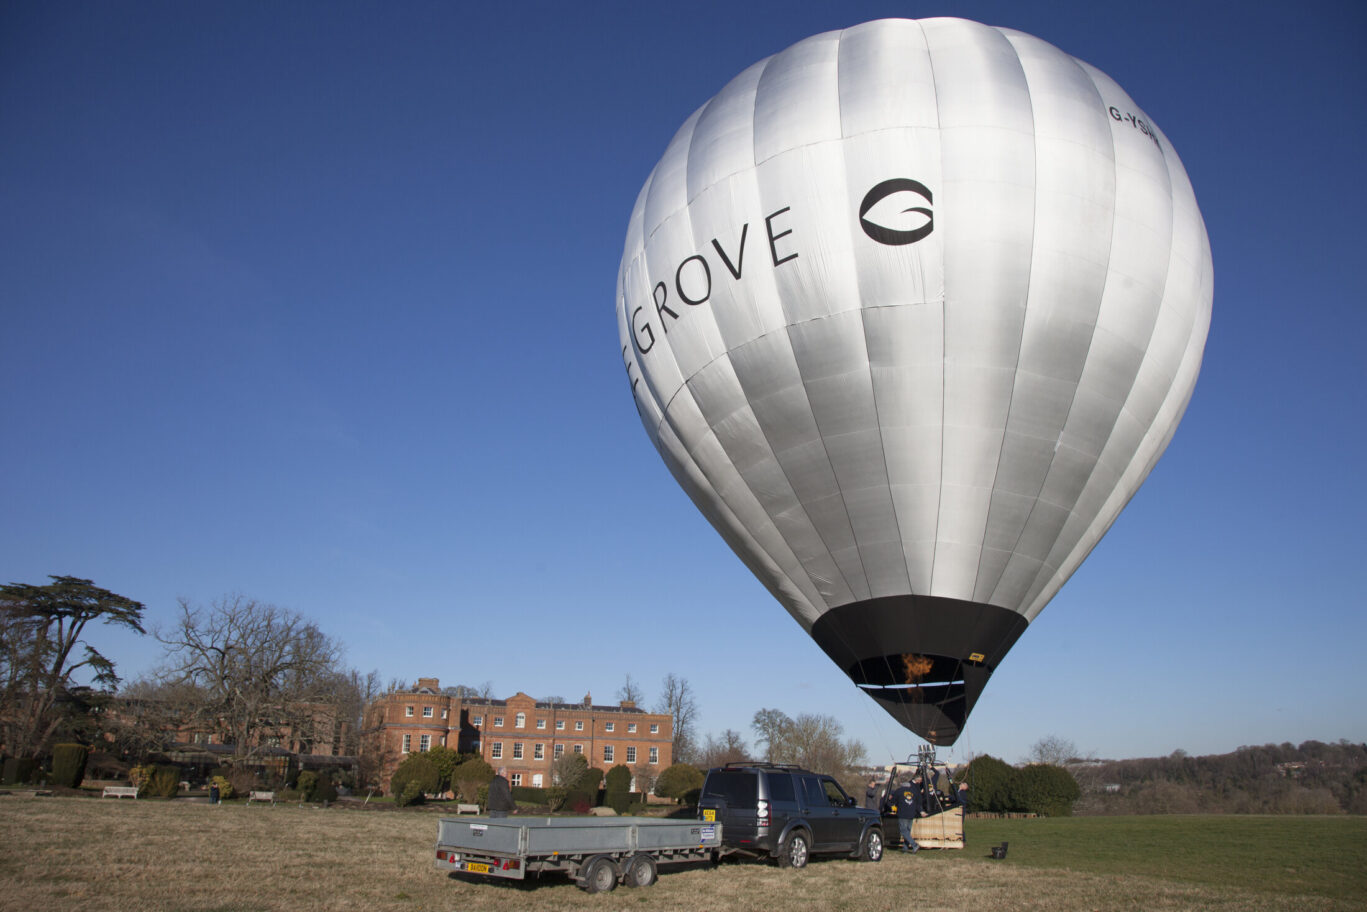 The Grove hot air balloon rides